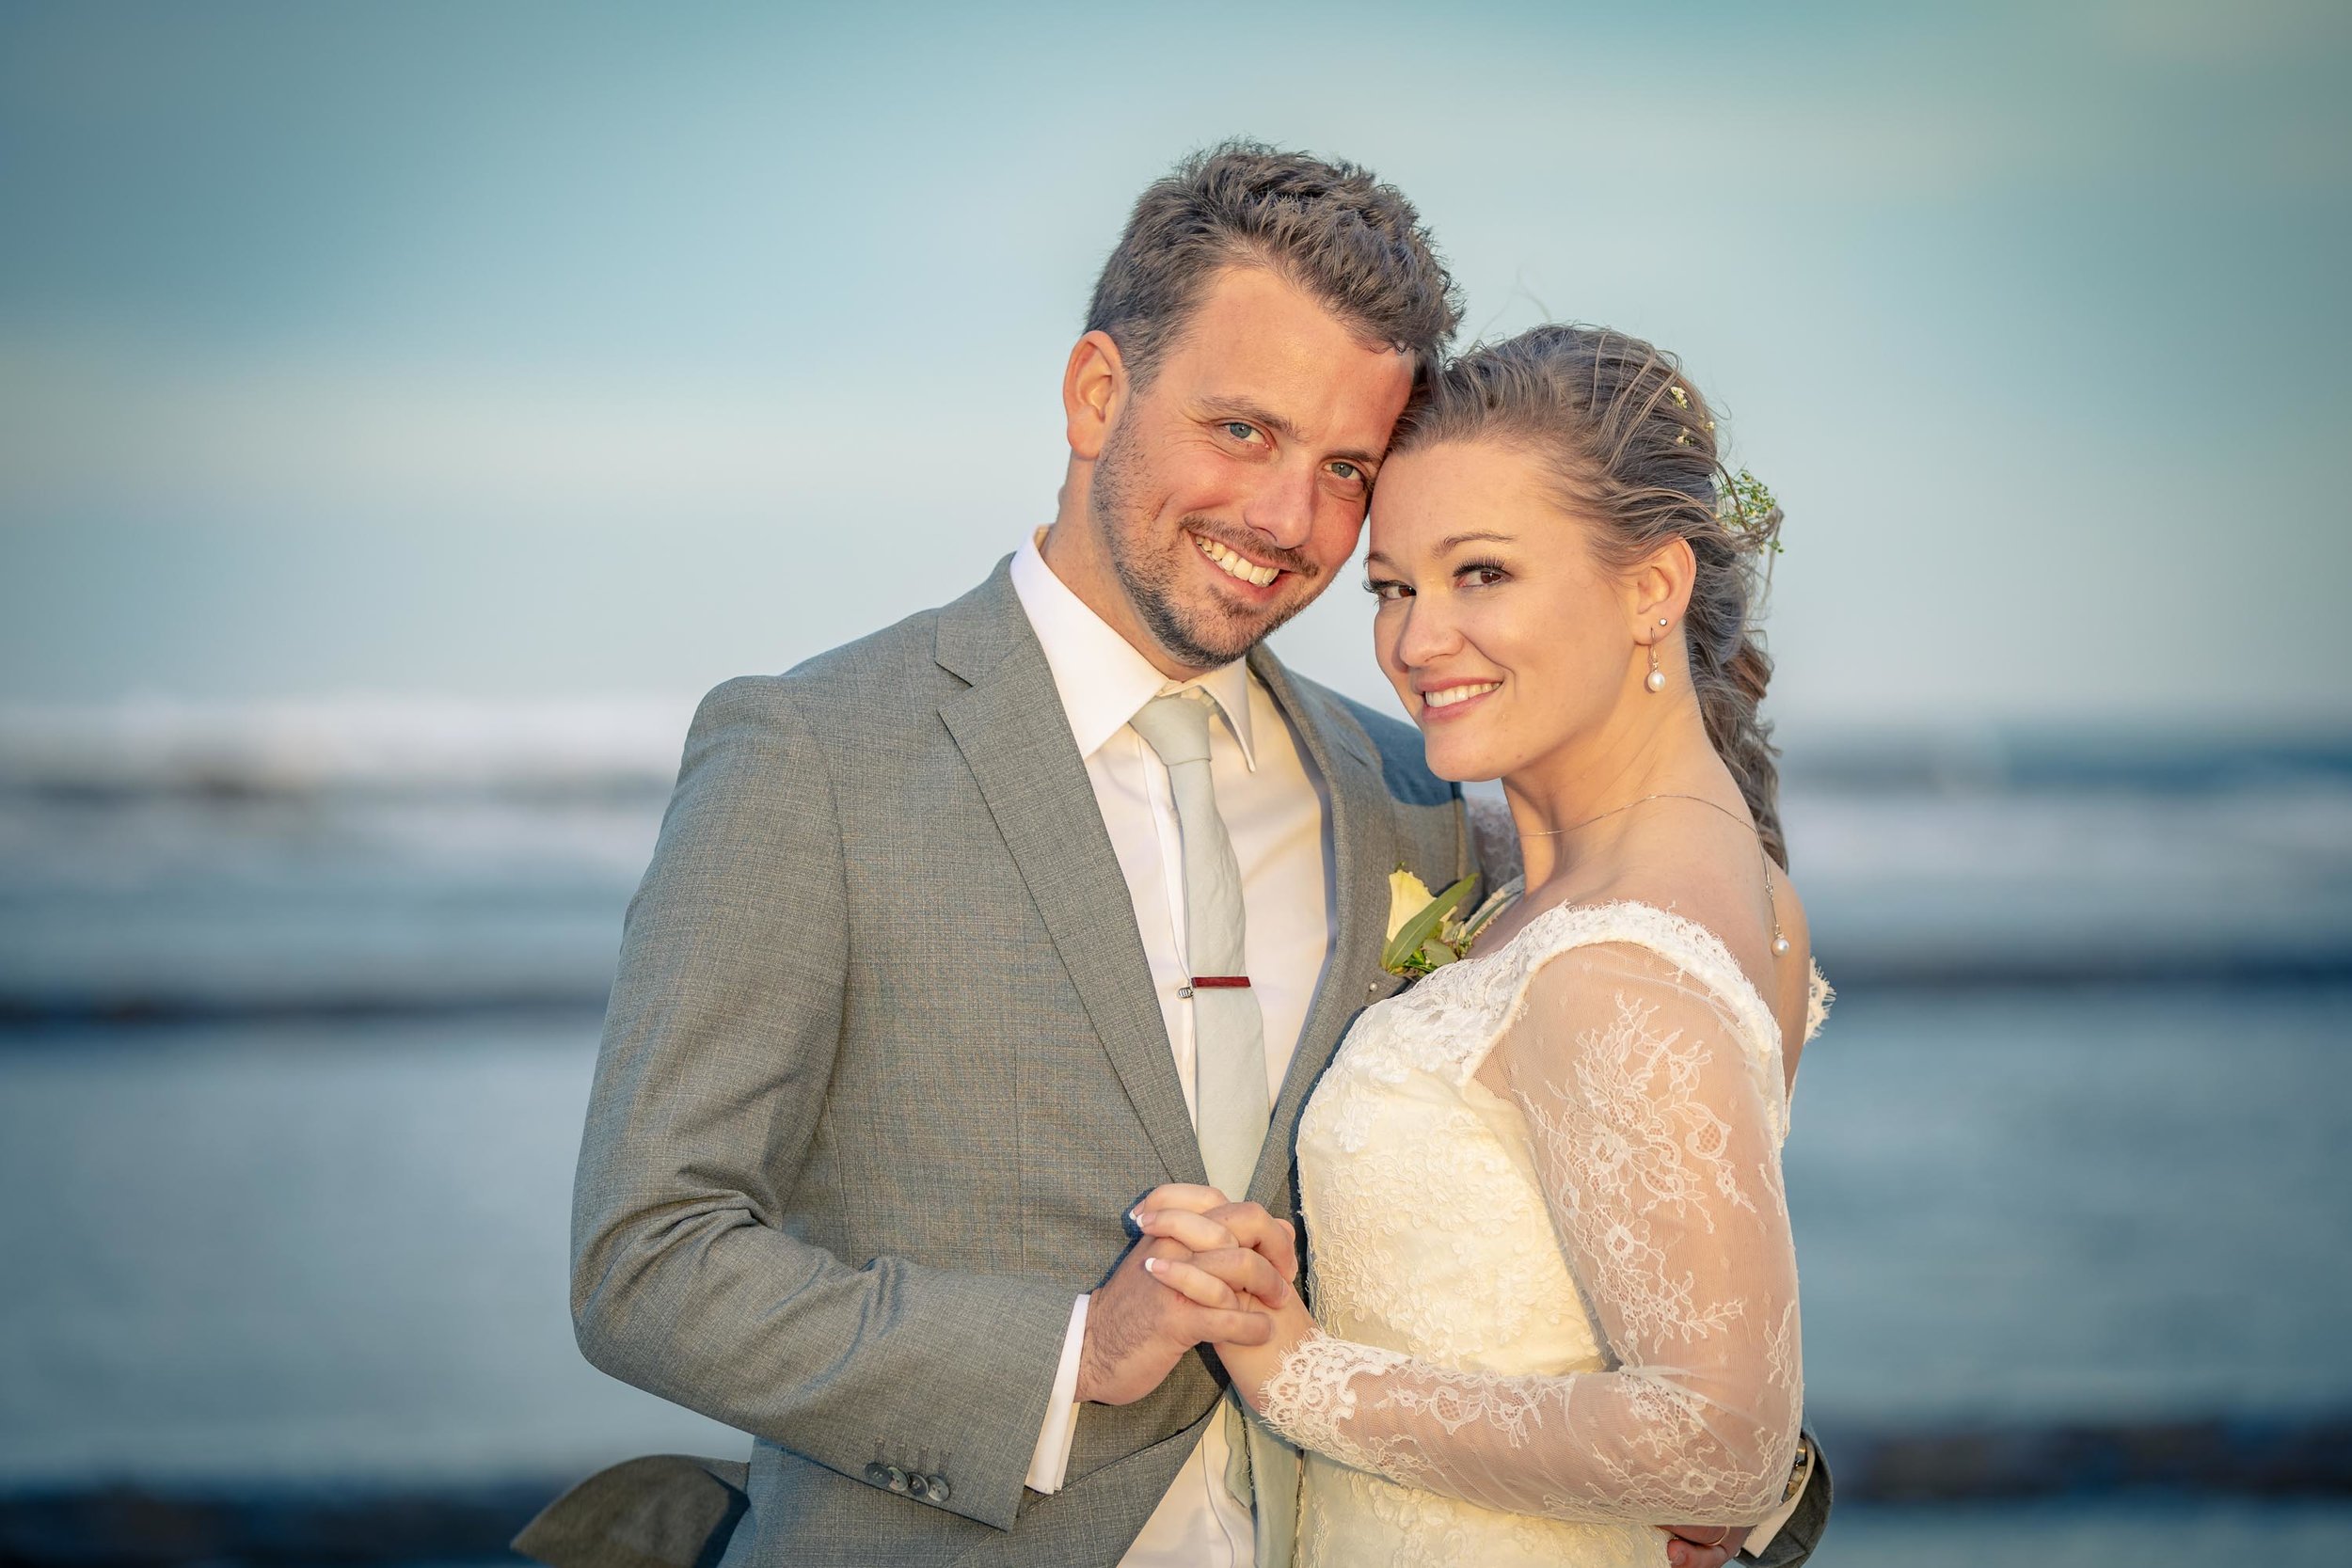  Ben and Leslie Reid Wedding August 2018 